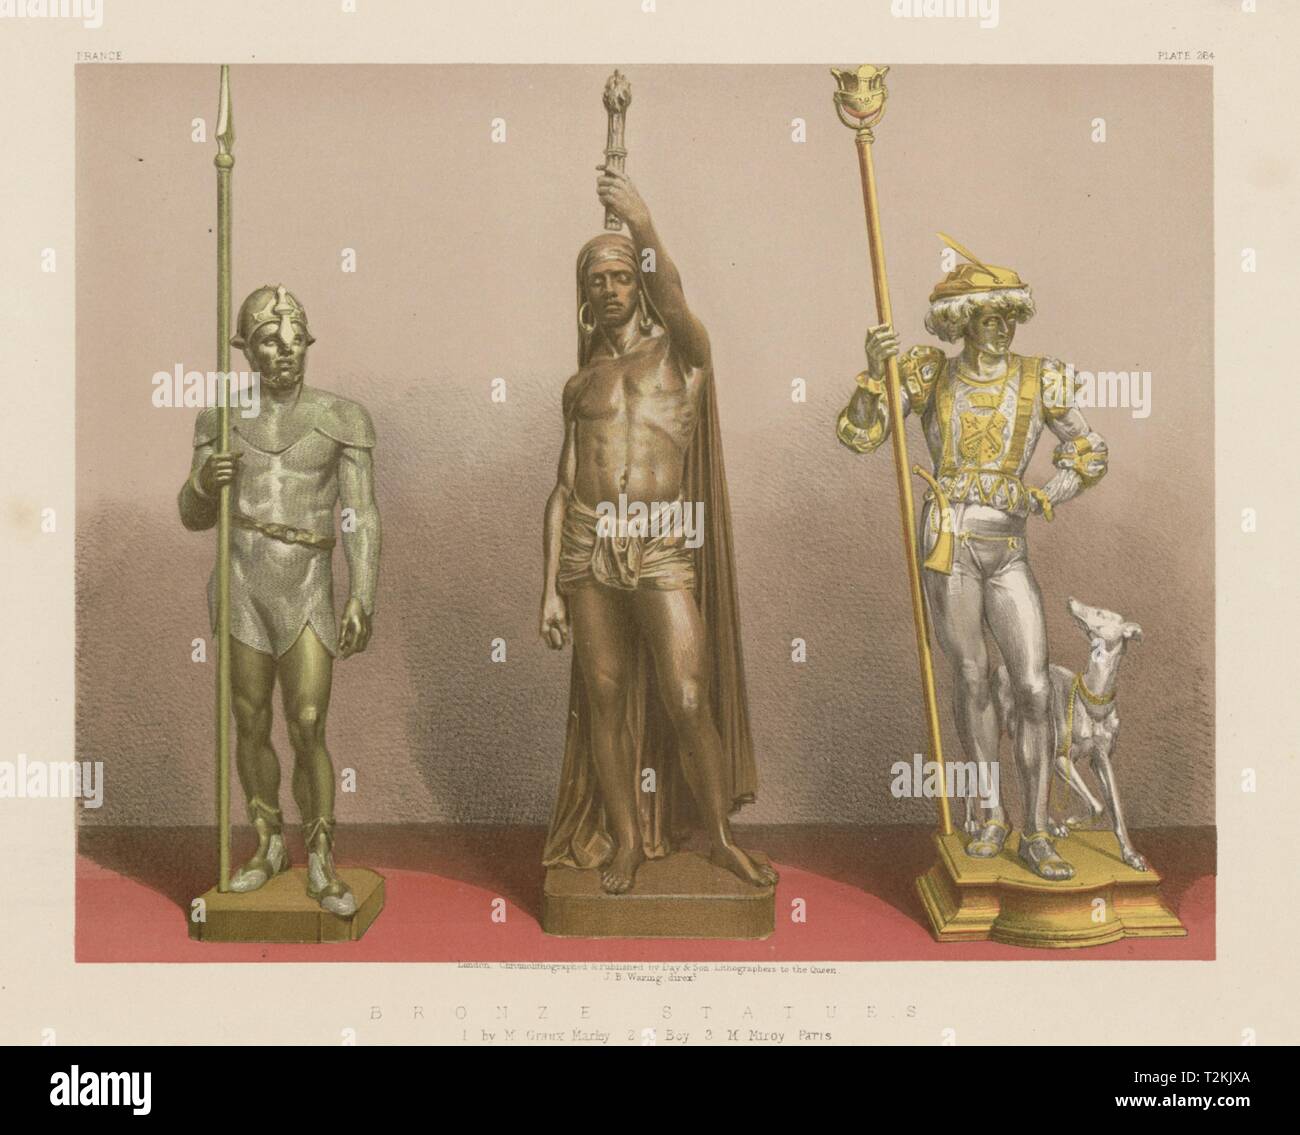 Exposición internacional. Estatuas de bronce. Graux Marley Boy Miroy Paris 1862 Foto de stock